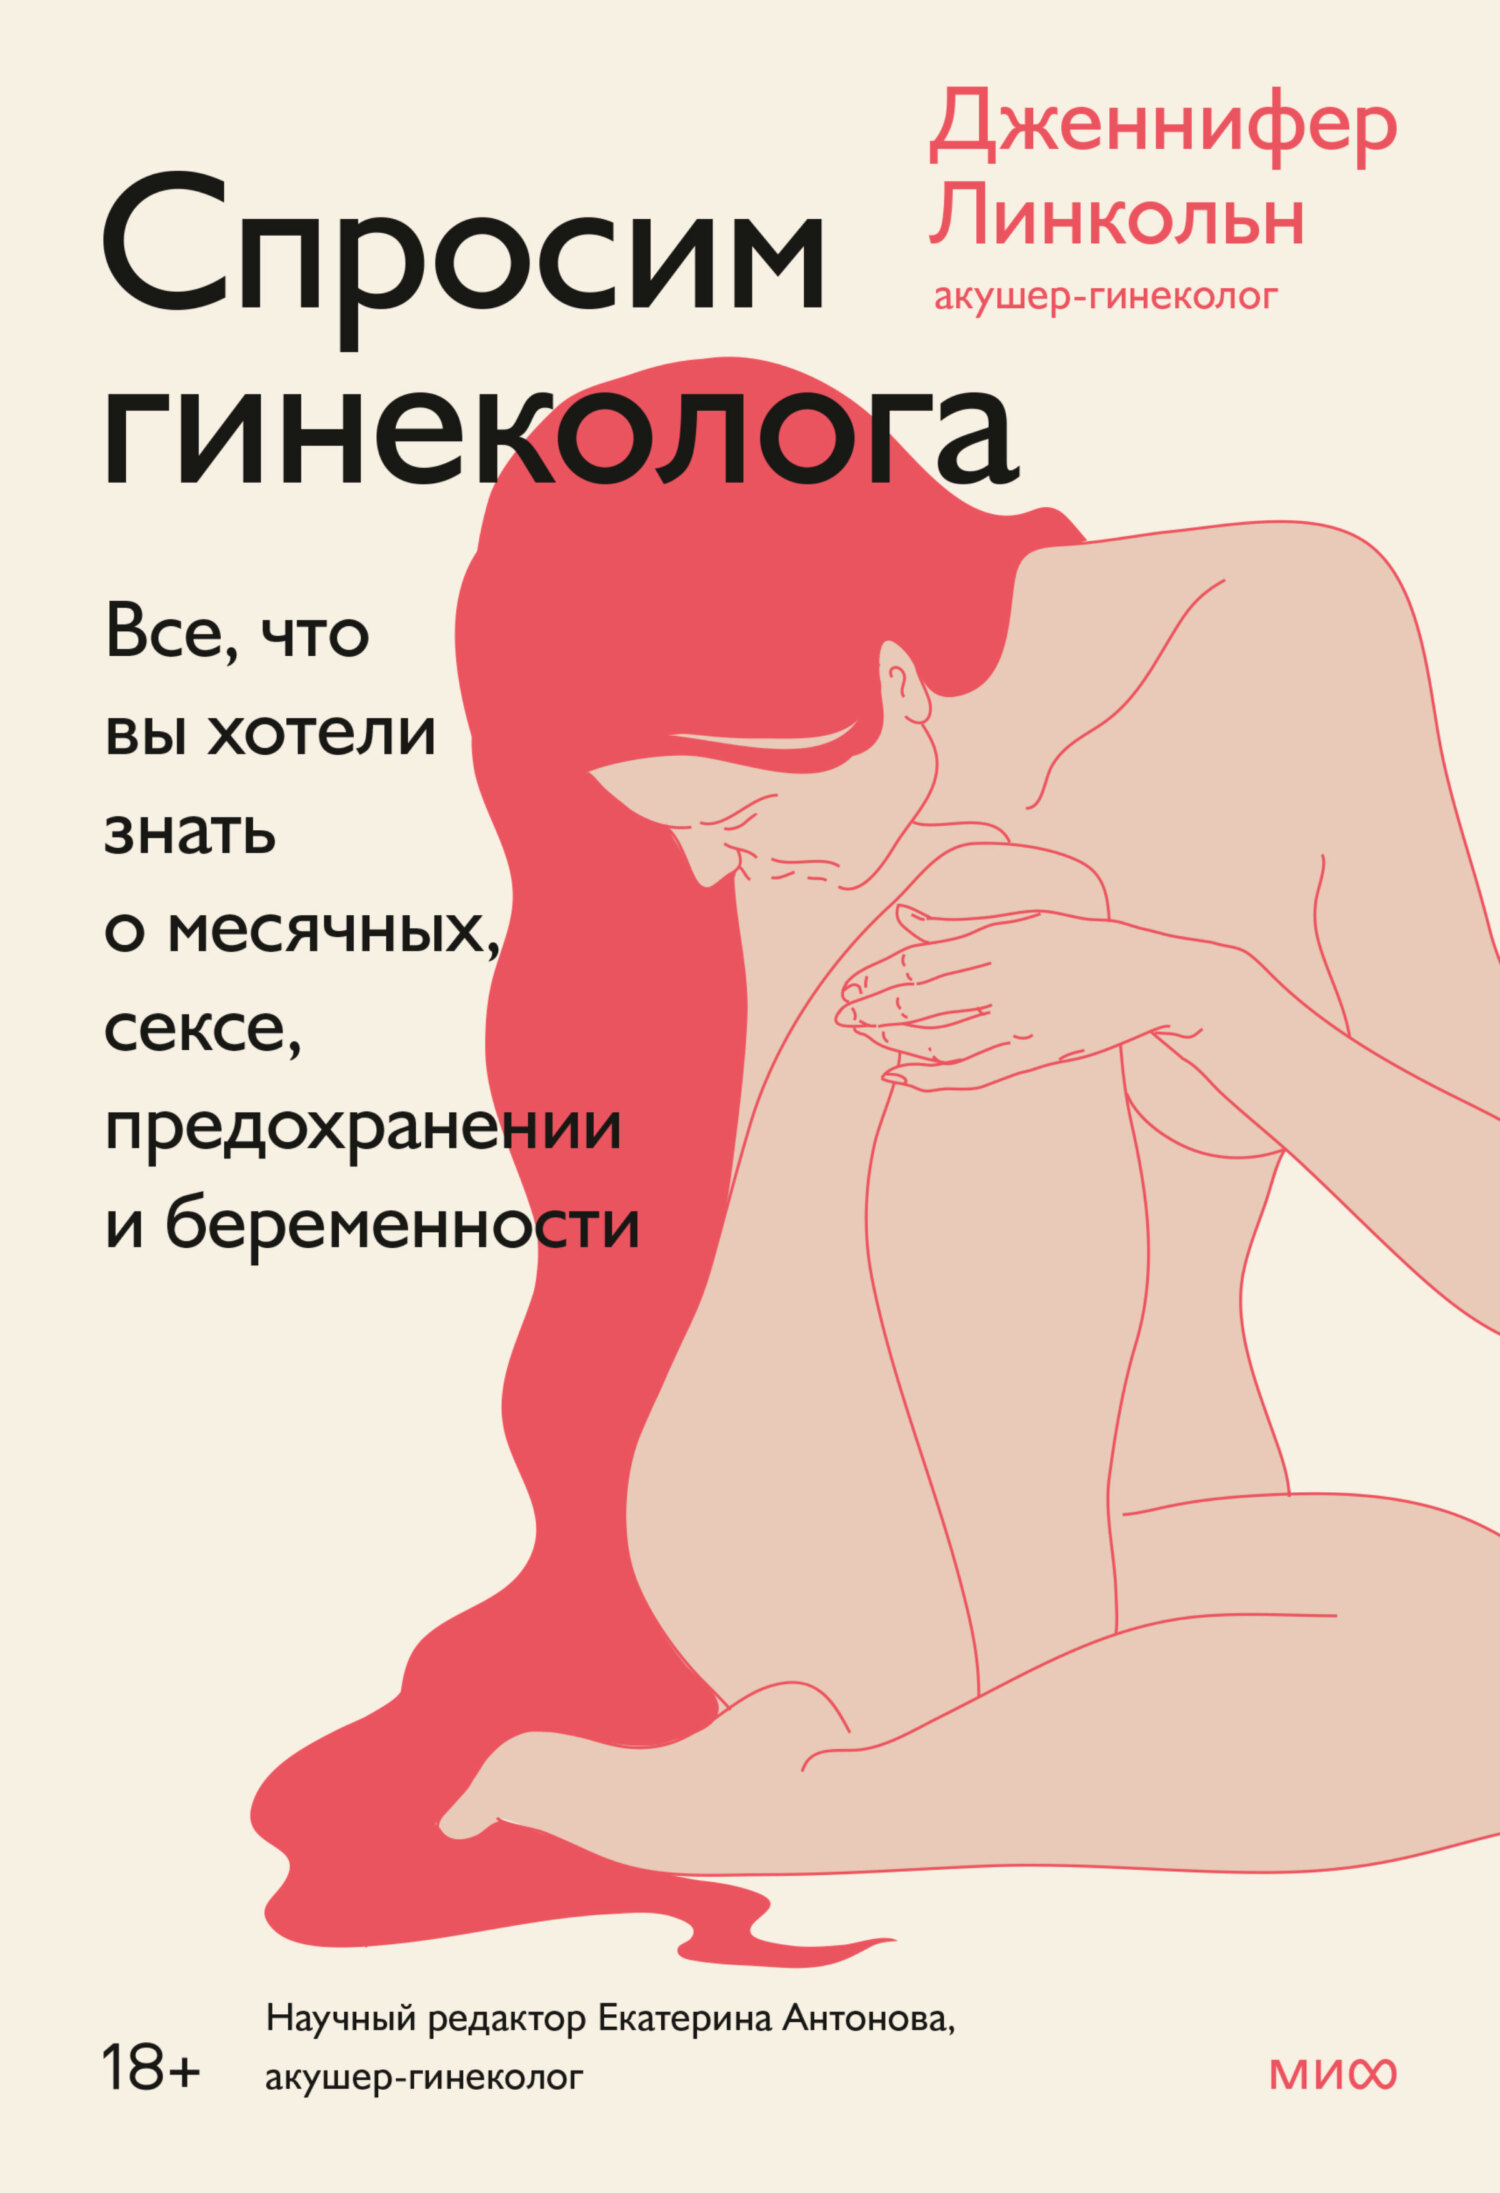 Первый секс. Есть вопросы. - 43 ответа на форуме beton-krasnodaru.ru ()